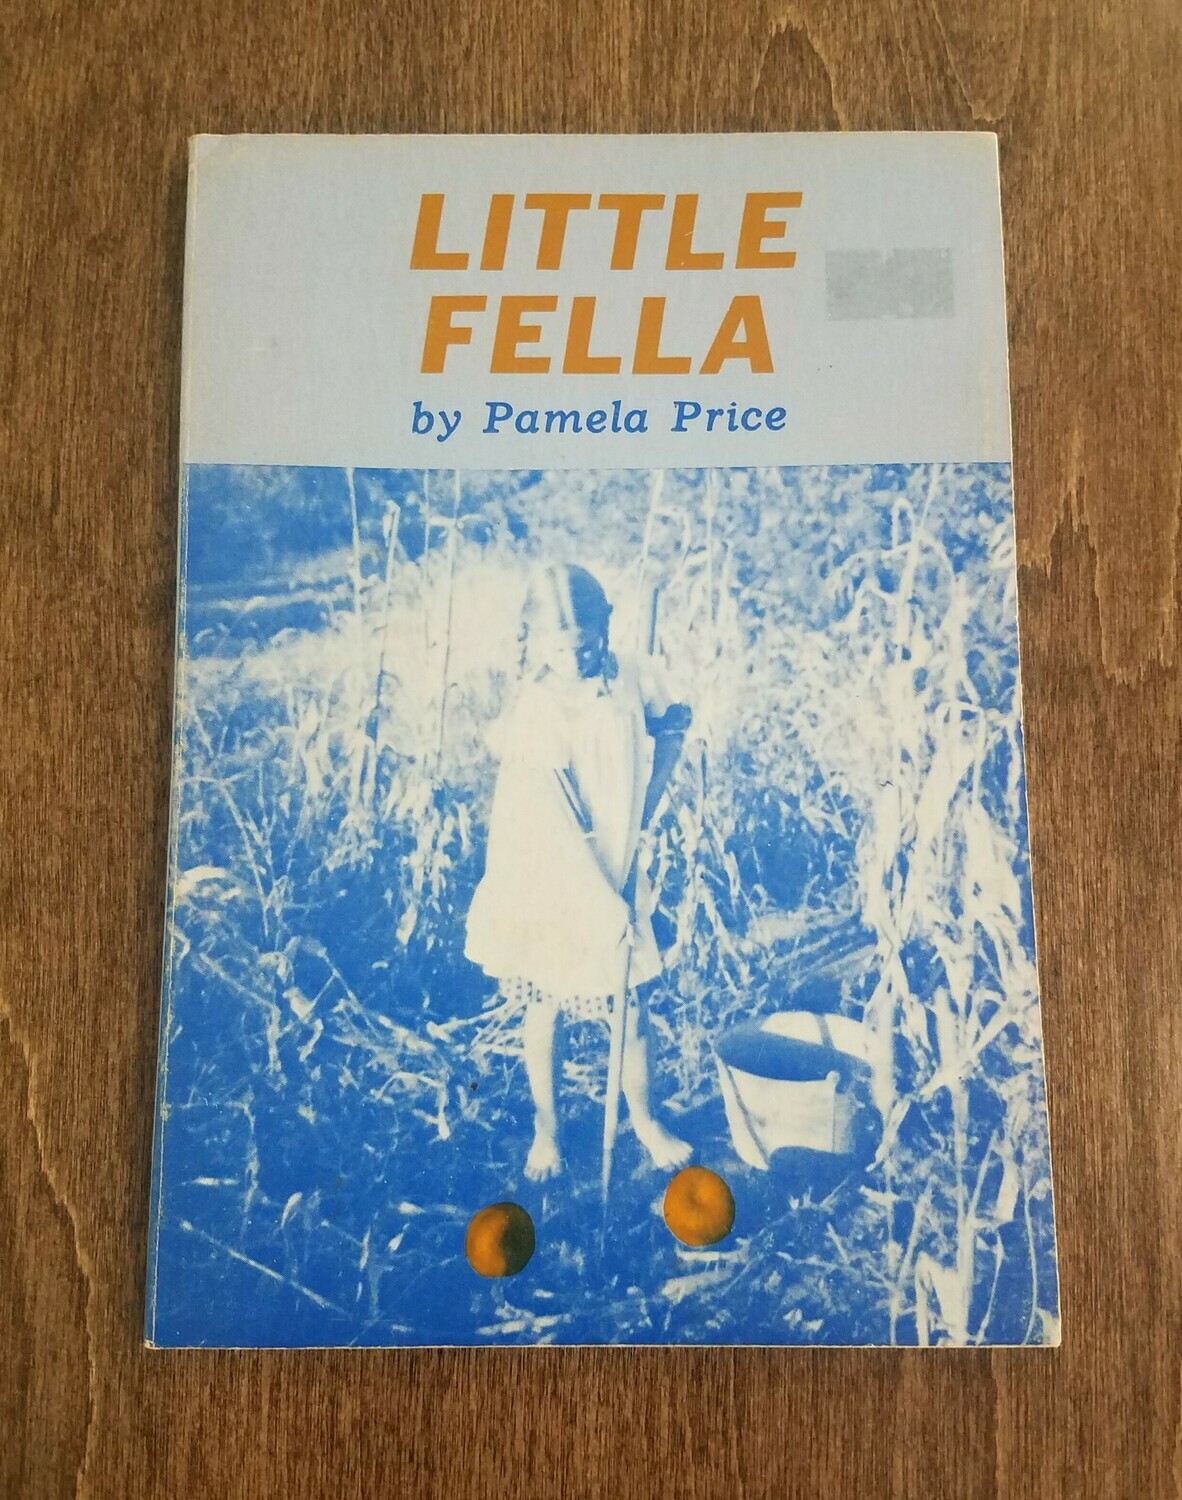 Little Fella by Pamela Price